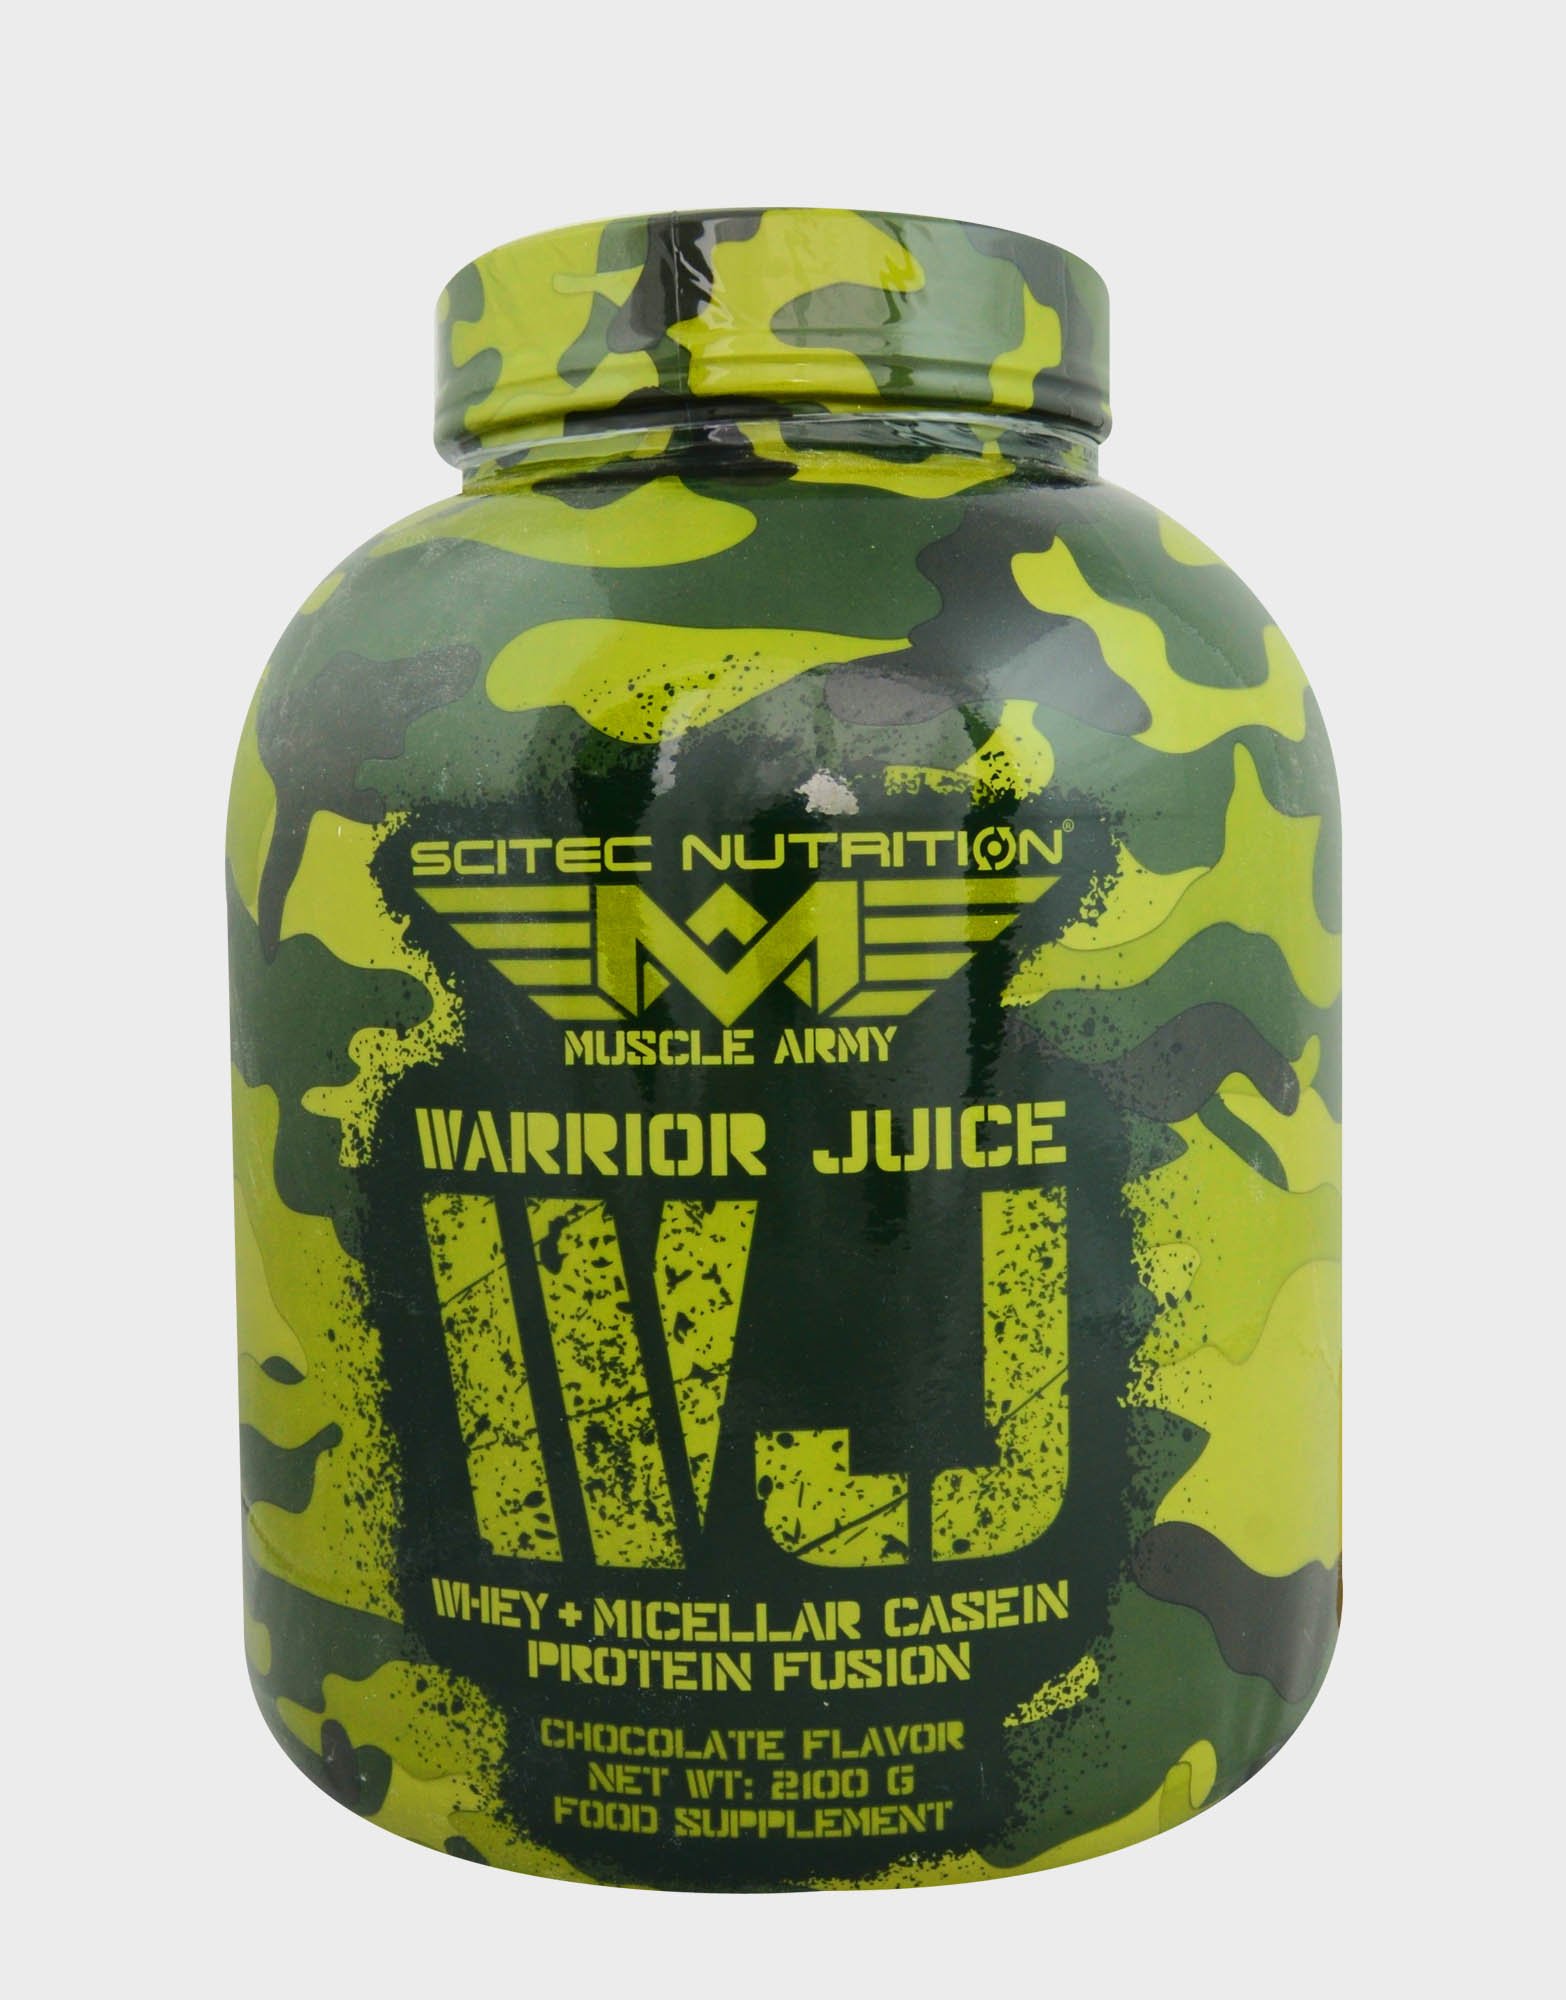 Warrior Juice, 2100 g, Scitec Nutrition. Protein Blend. 